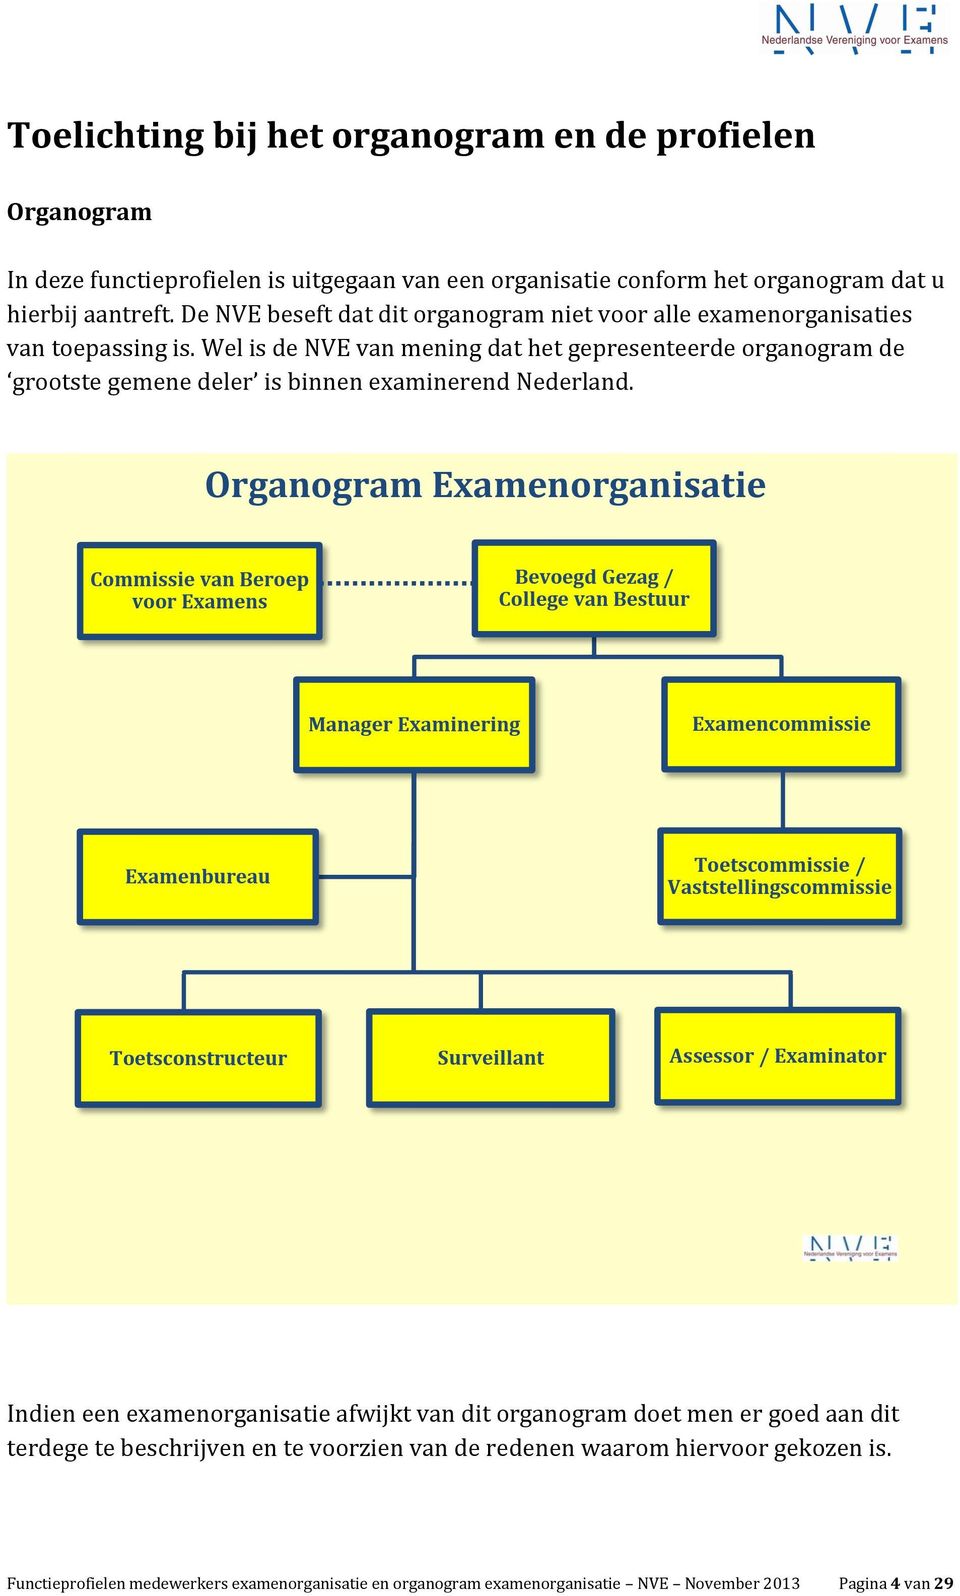 Wel is de NVE van mening dat het gepresenteerde organogram de grootste gemene deler is binnen examinerend Nederland.